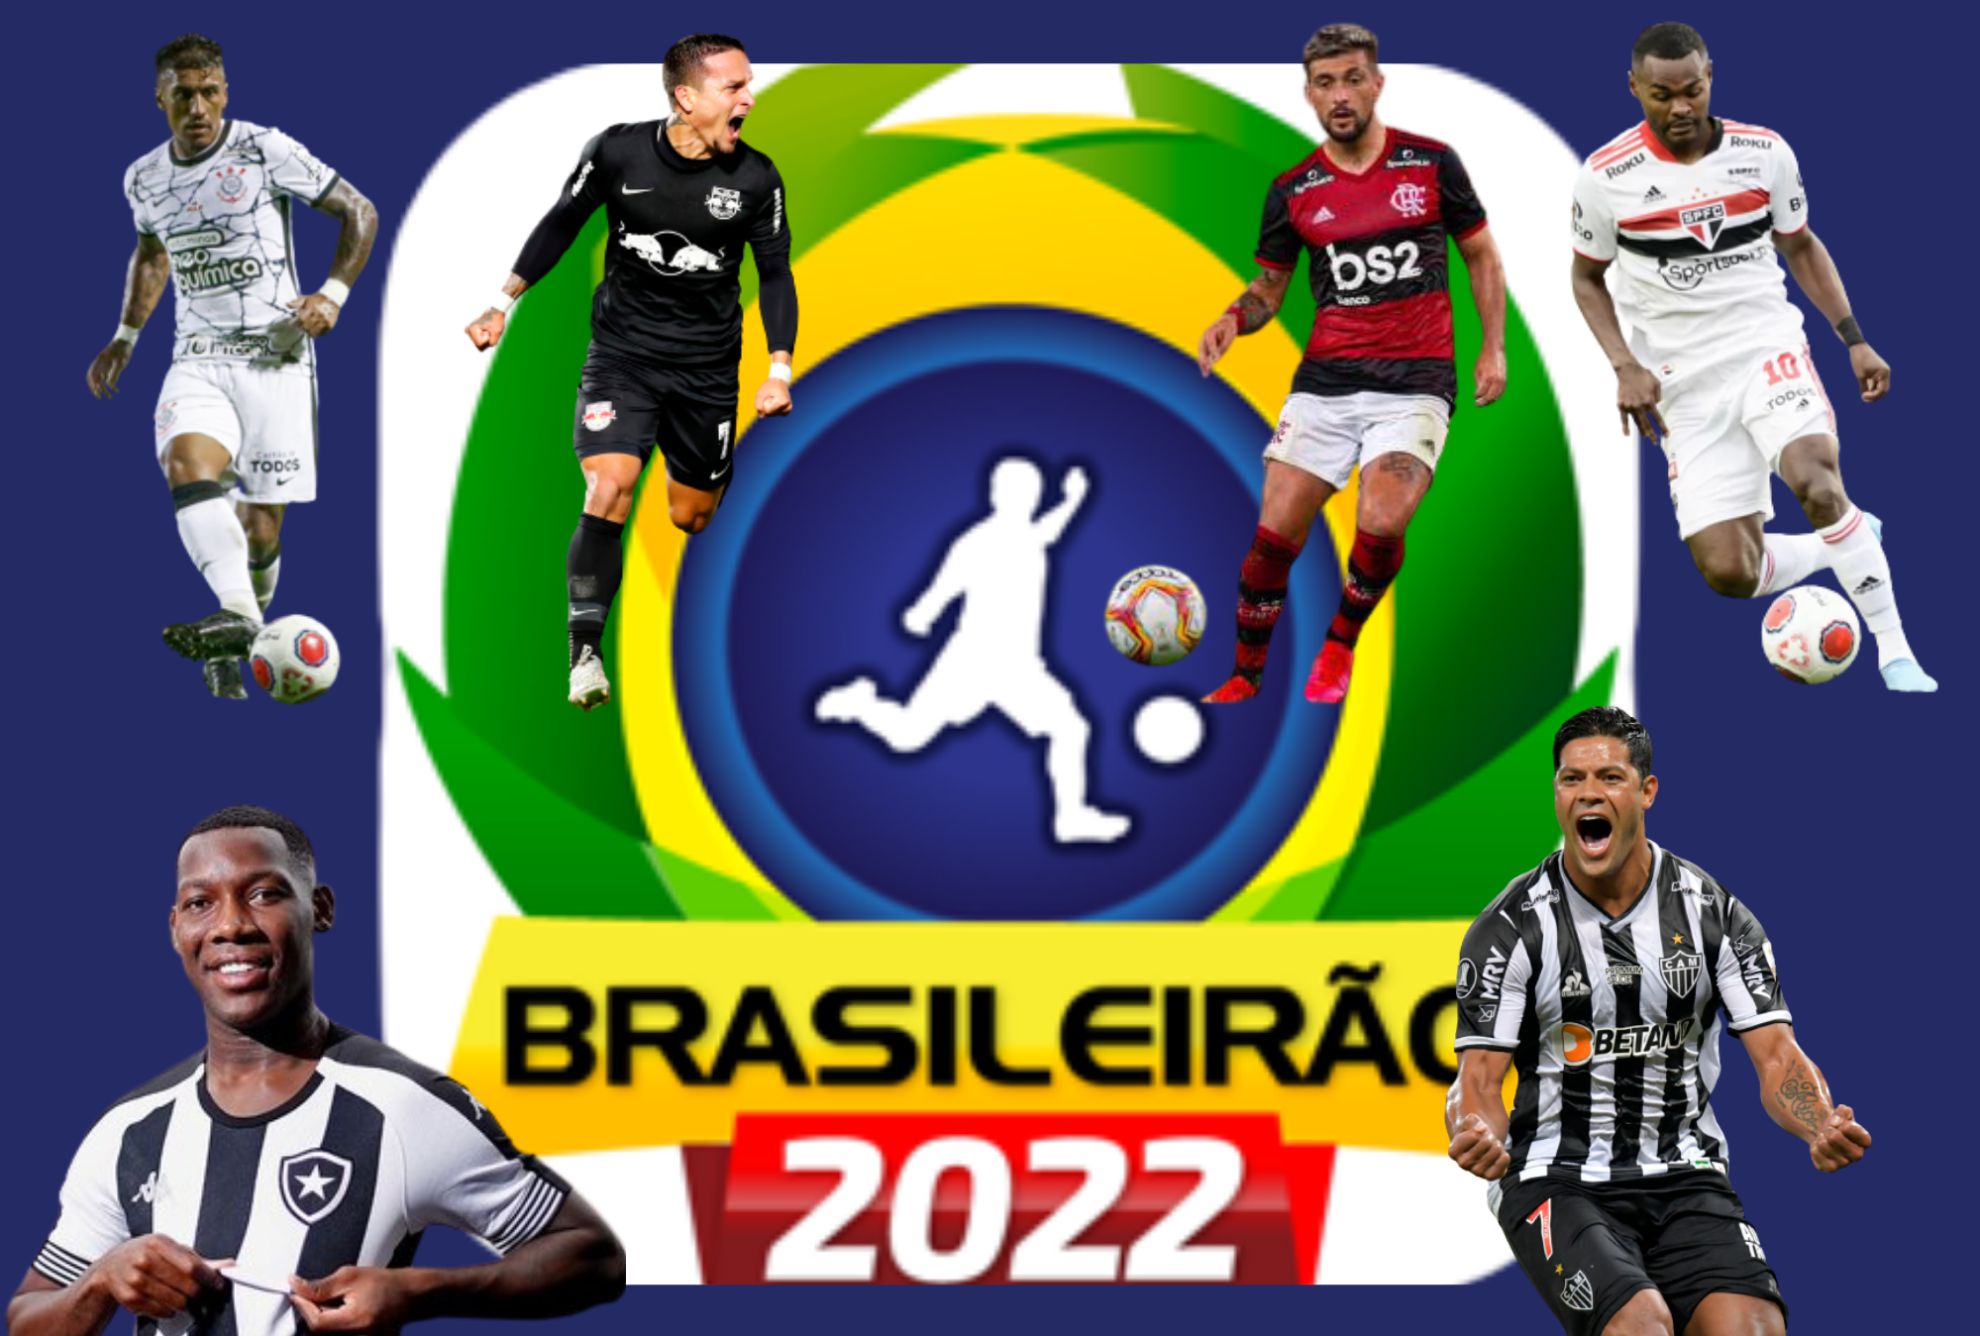 Guía 2022: equipos, estrellas jóvenes a seguir - AS.com